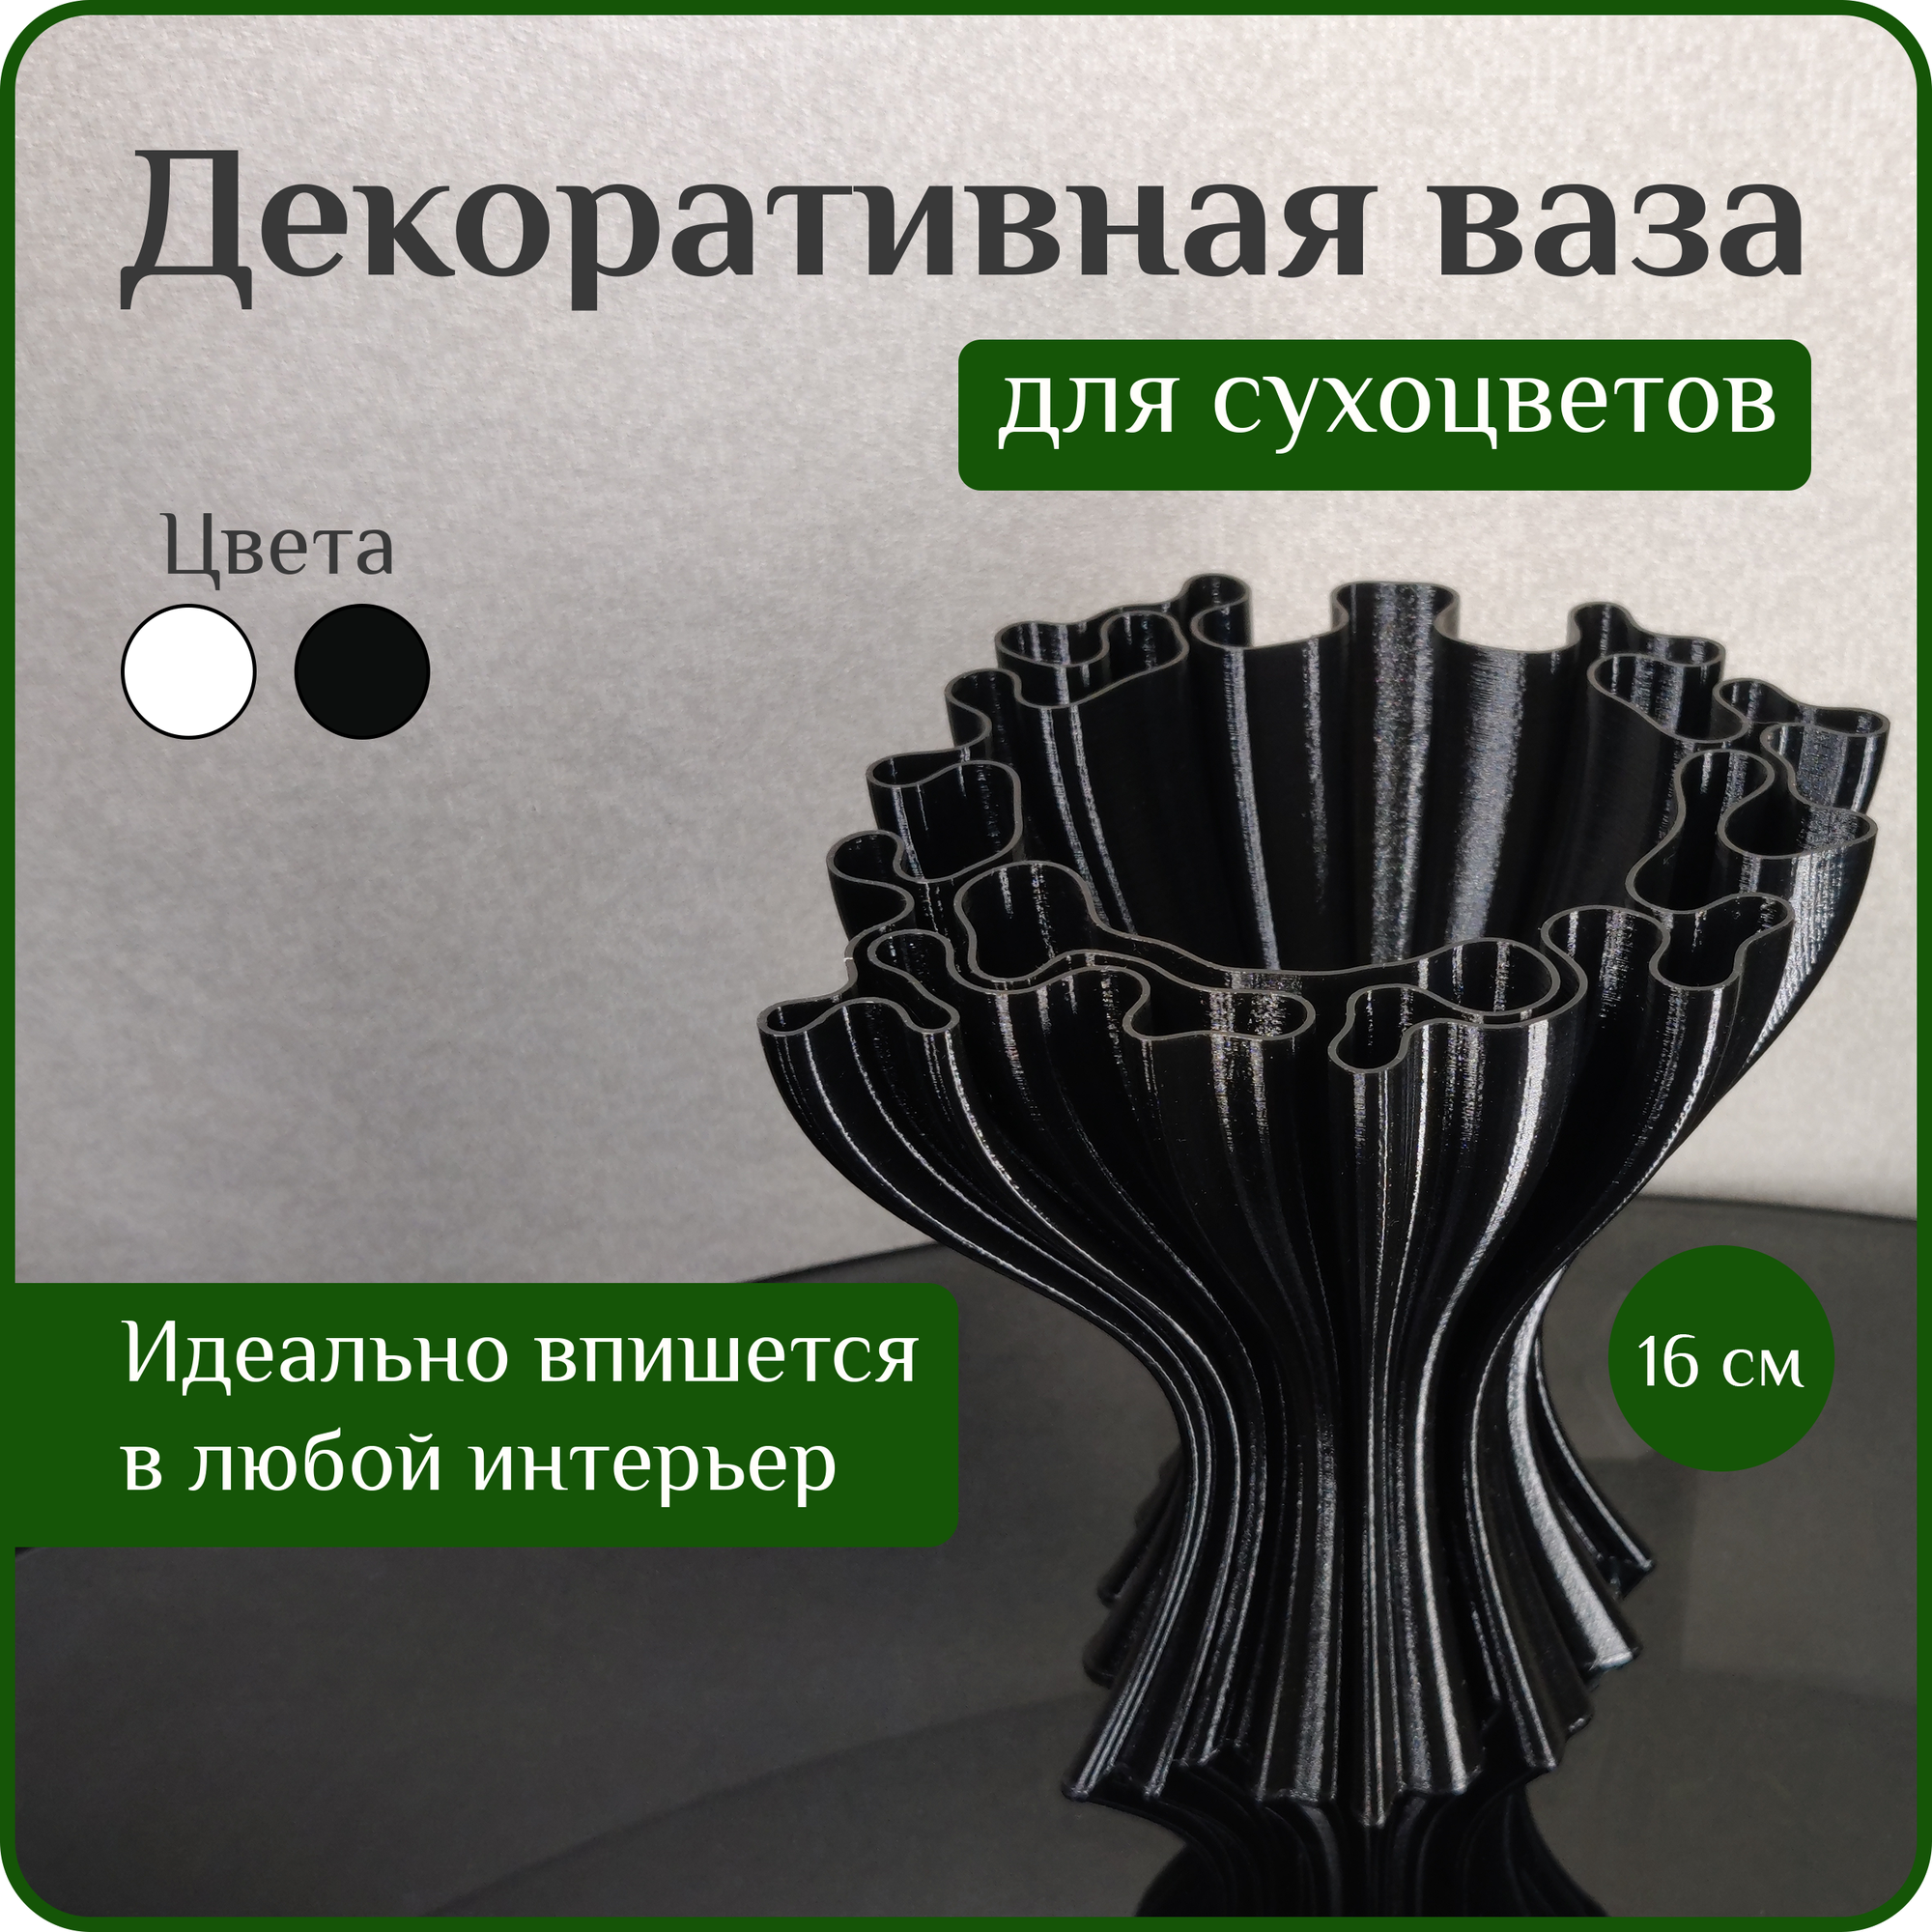 Ваза декоративная интерьерная "Черная", ваза для сухоцветов черная, ваза для декора, 16 см, пластик